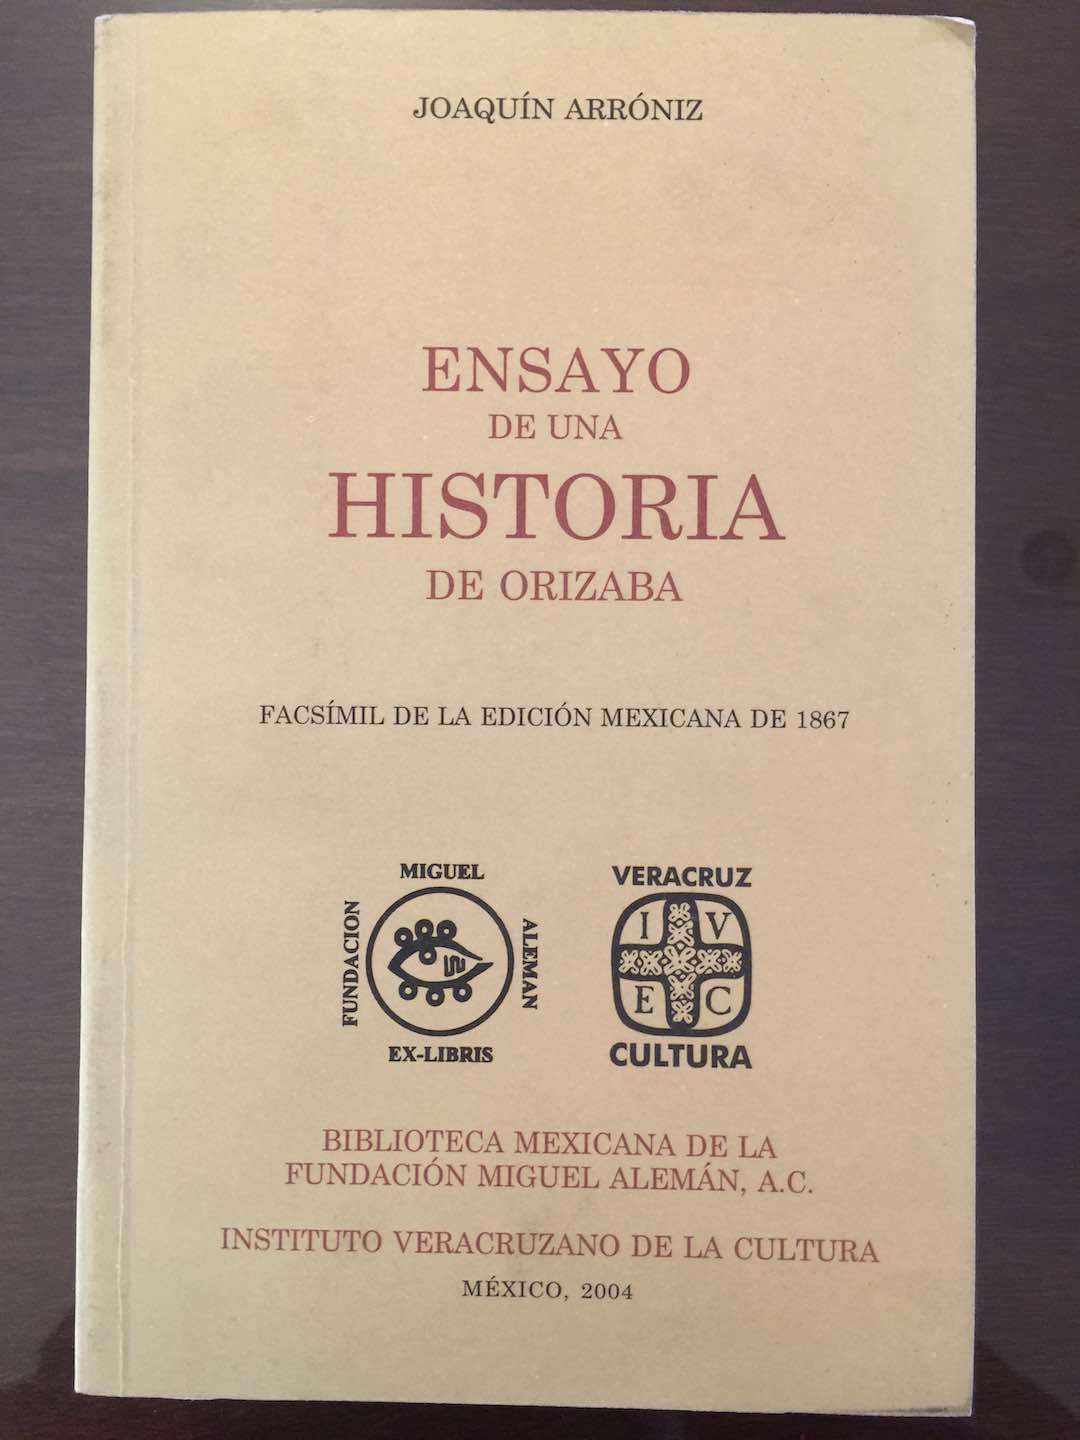 La Biblioteca Mexicana de la Fundación Miguel Alemán A. C. | Por Marco Darío Balderas Lima